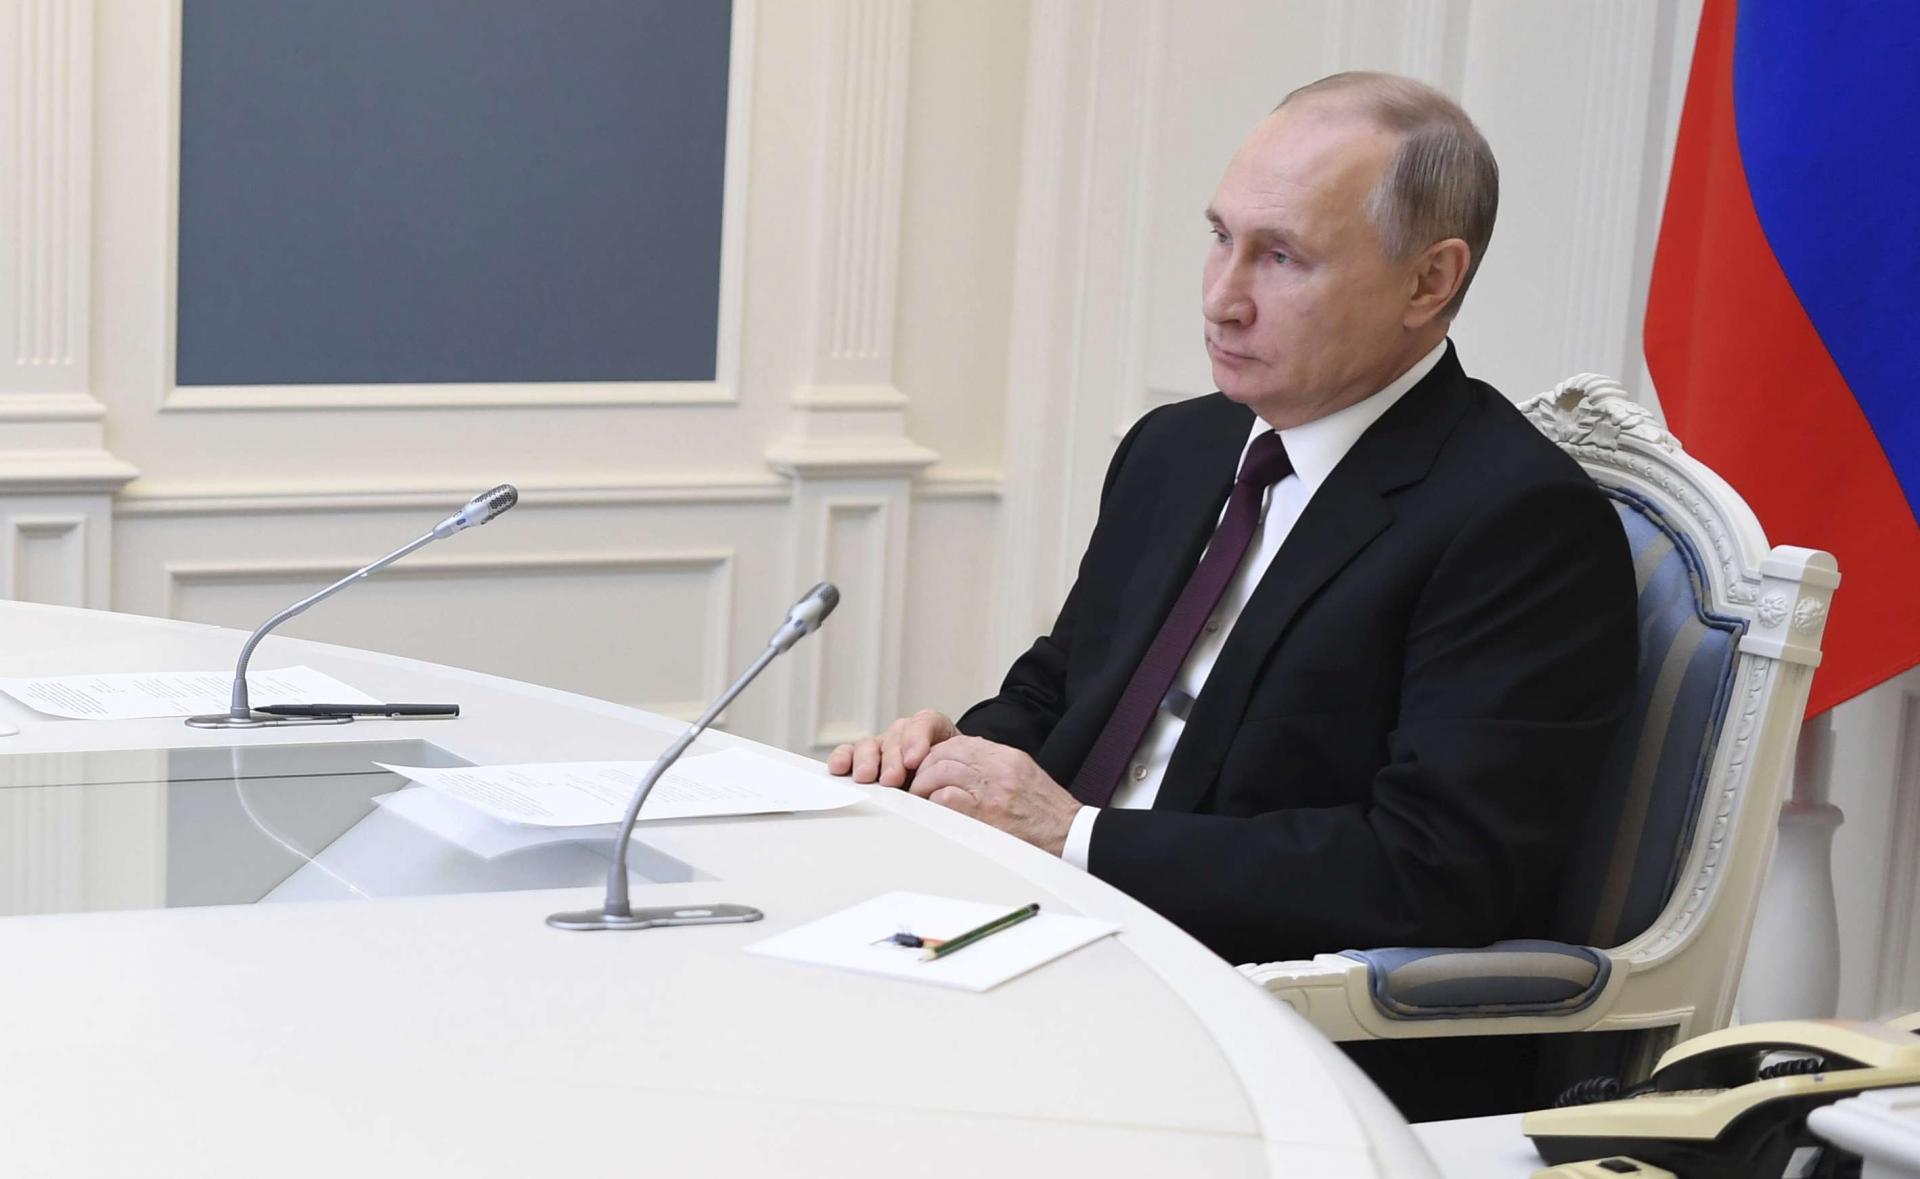 الروس يطالبون الاميركيين بتوضيحات واعتذارات لبوتين